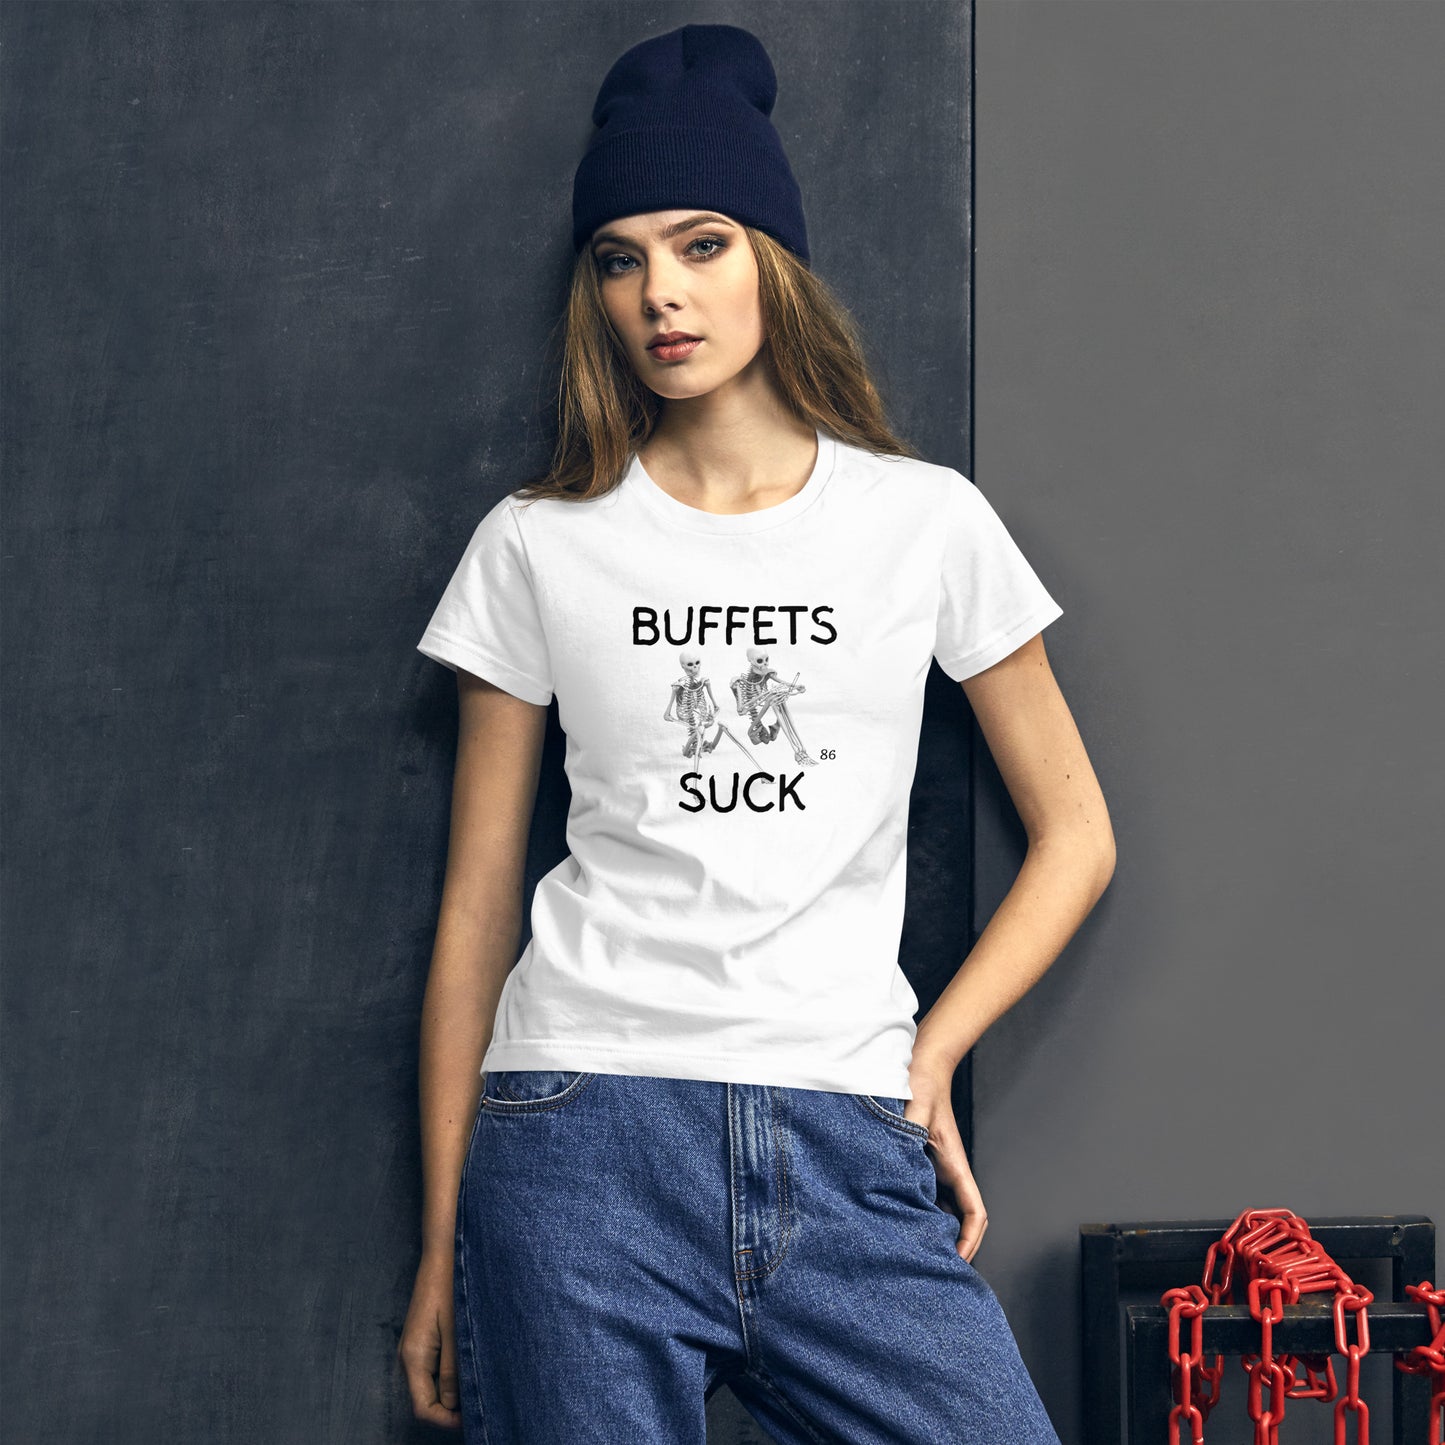 BUFFETS SUCK 2 Women's short sleeve t-shirt